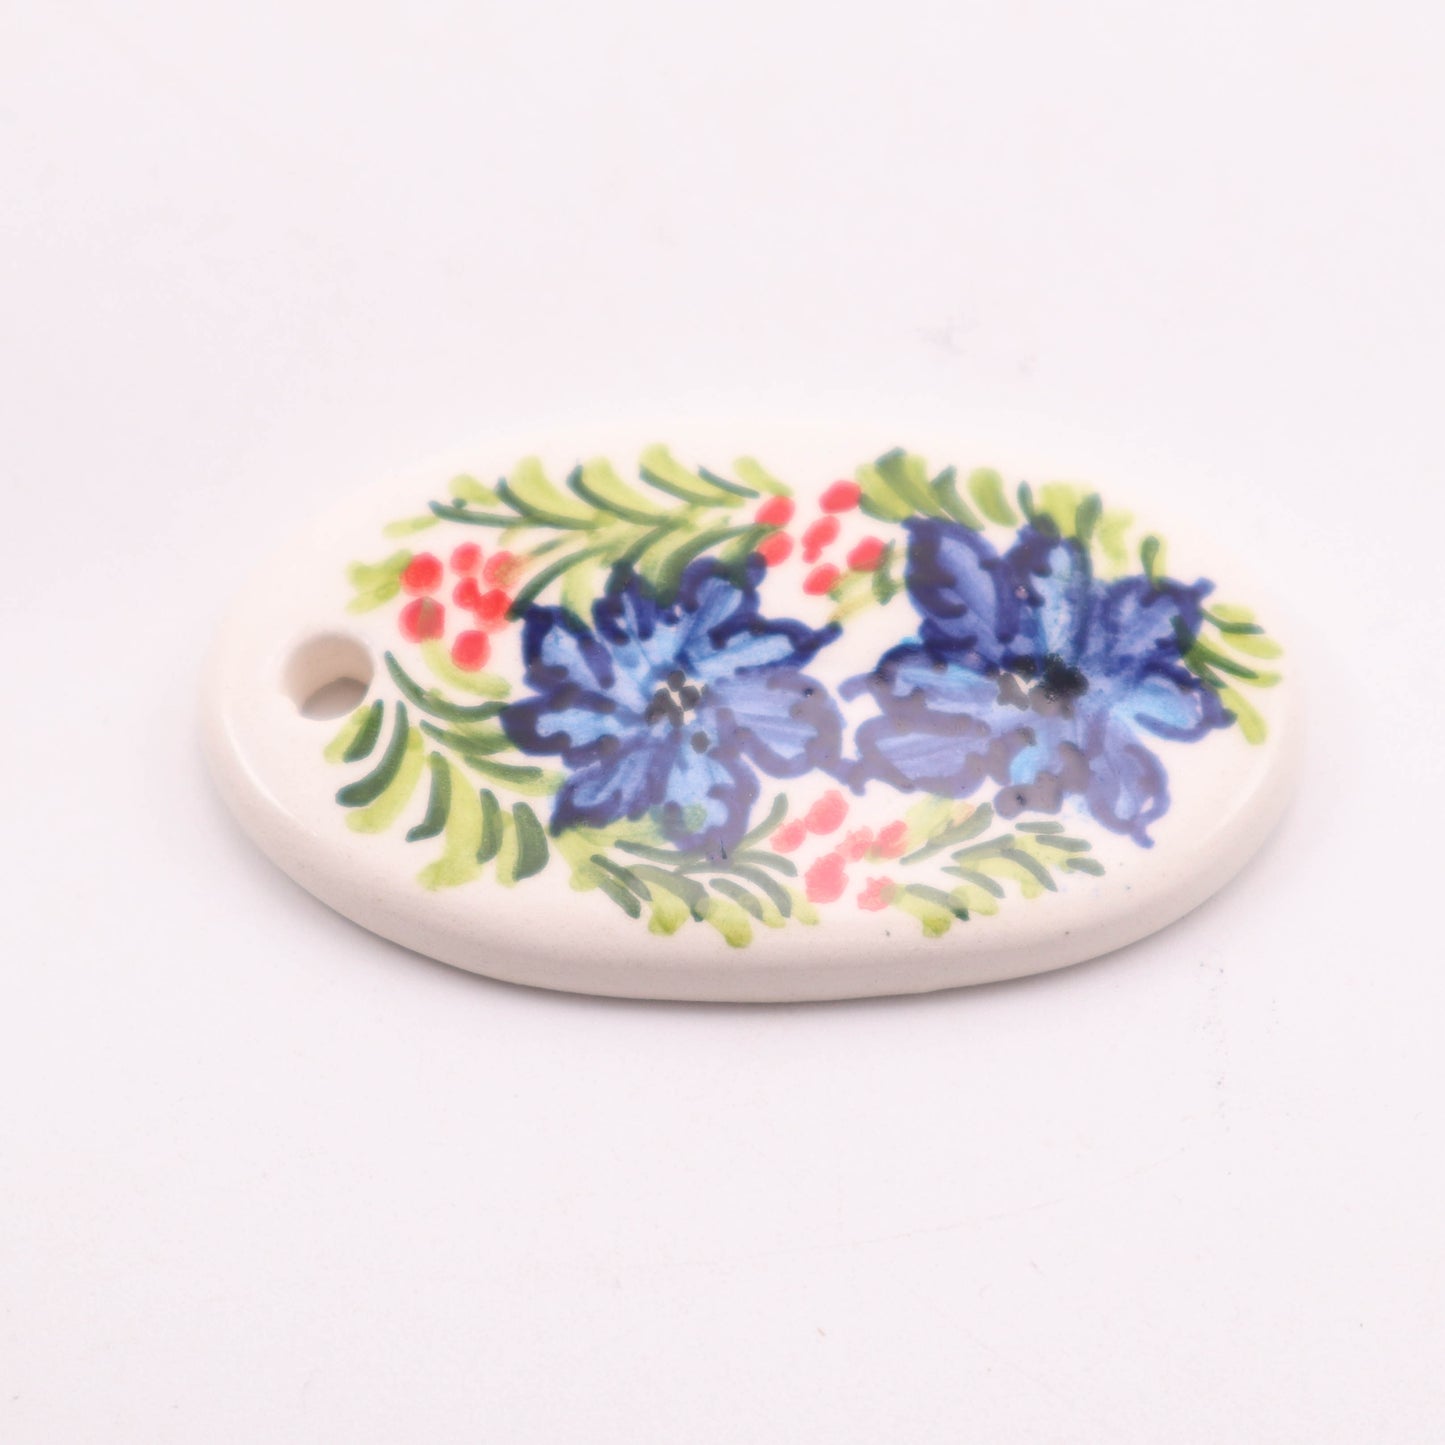 2.5" Oval Pendant. Pattern: Blue Flowers